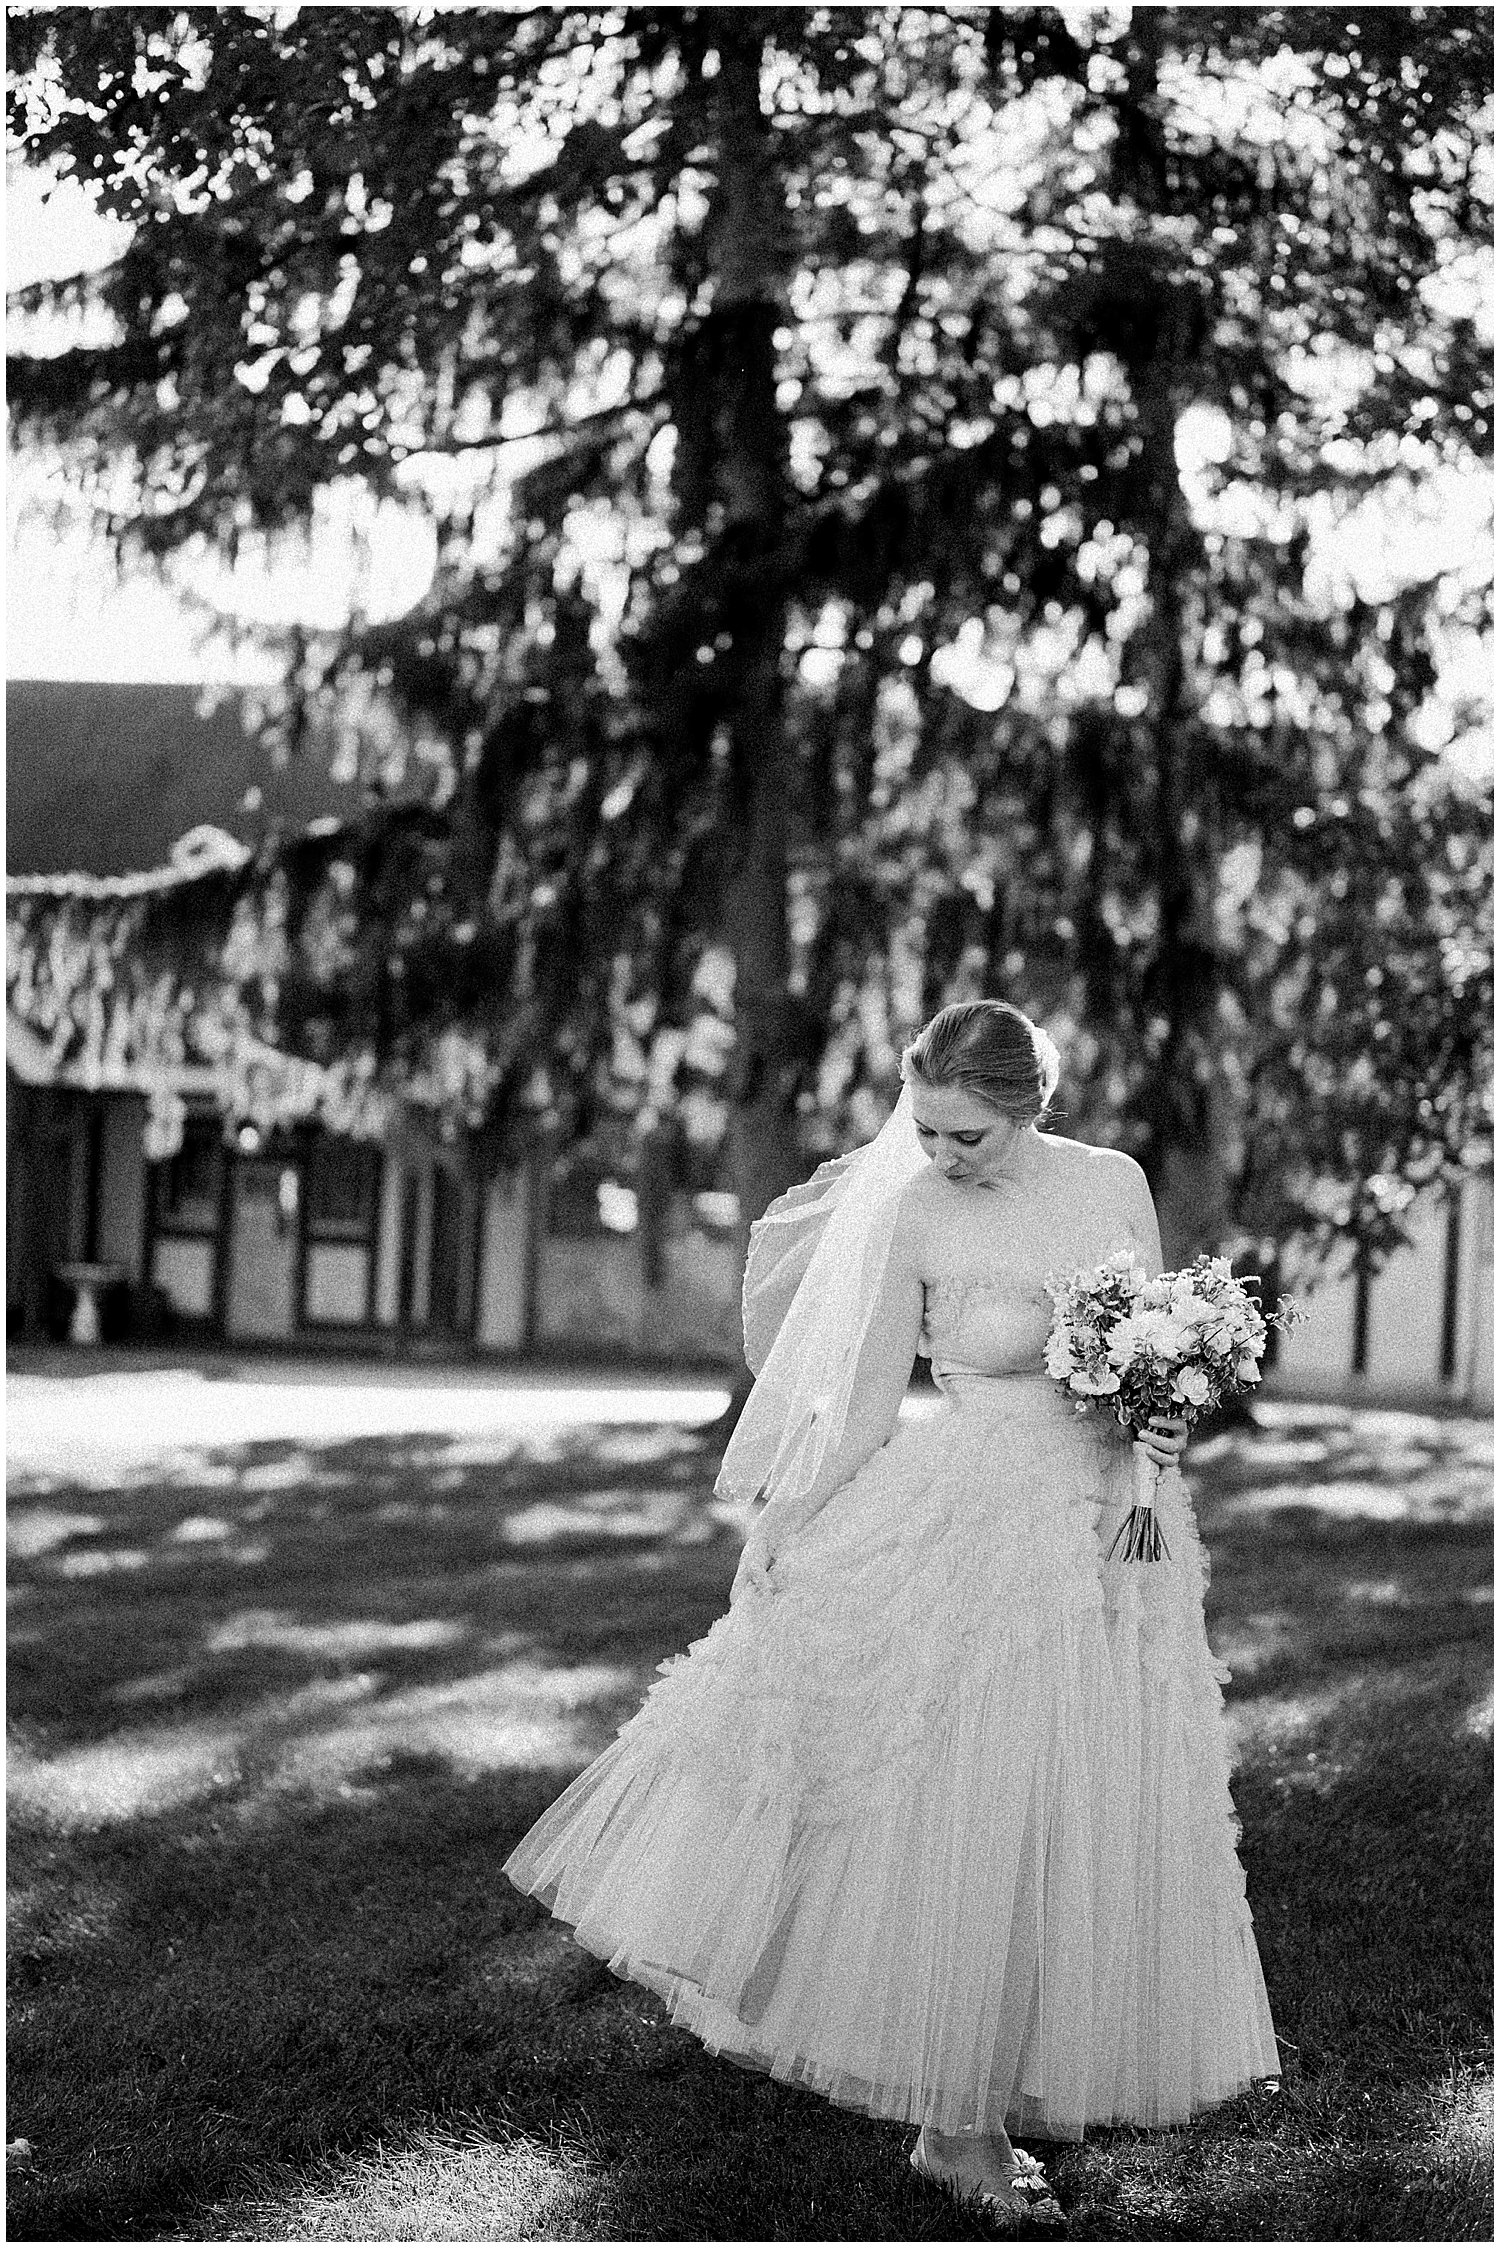 The Orrmont Estate Wedding | Piqua, Ohio